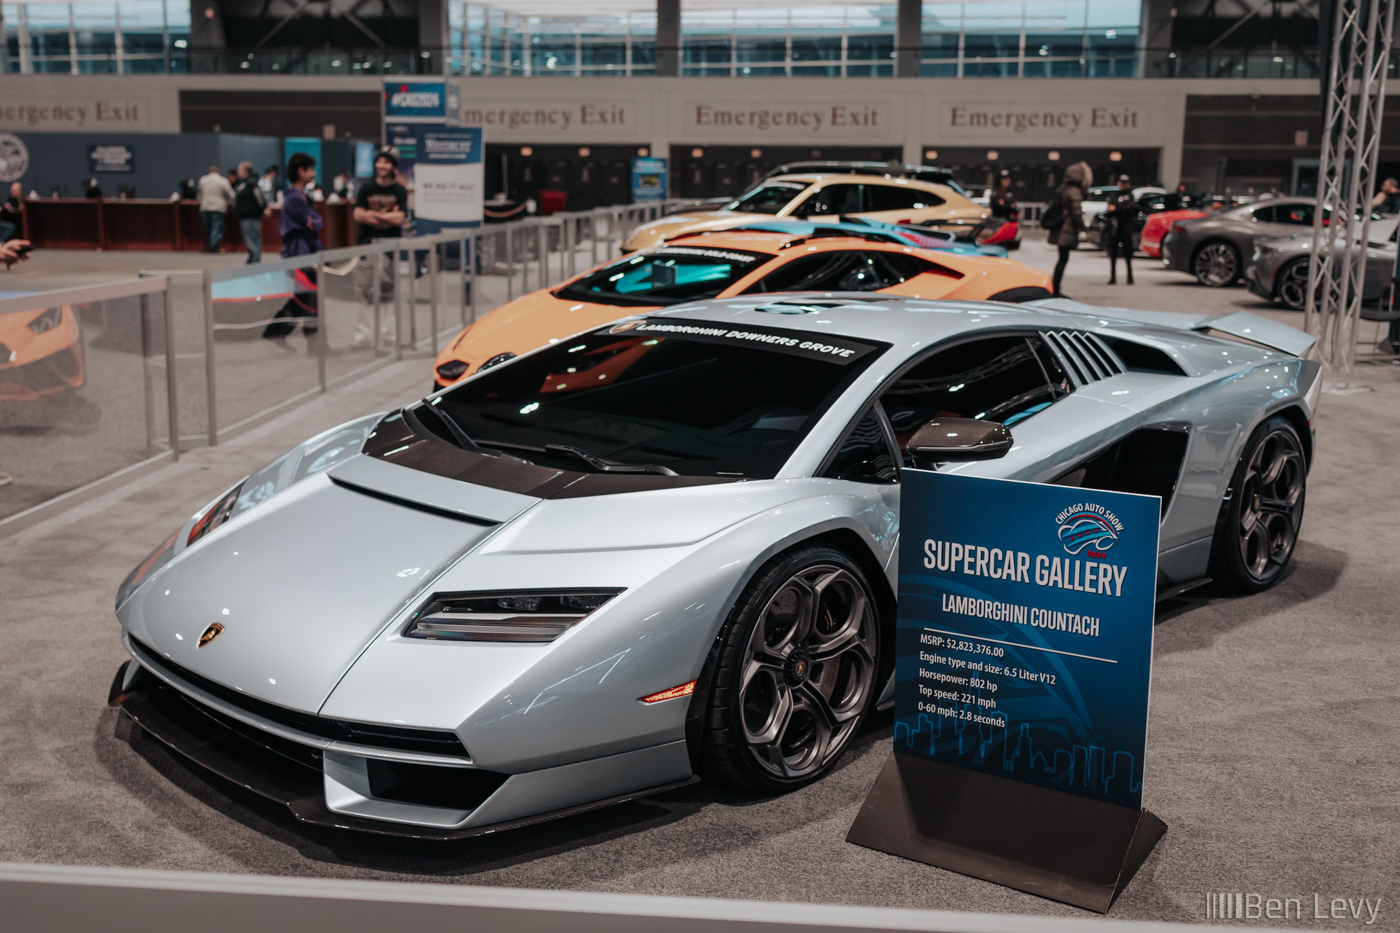 Silver Lamborghini Countach in the Supercar Gallery